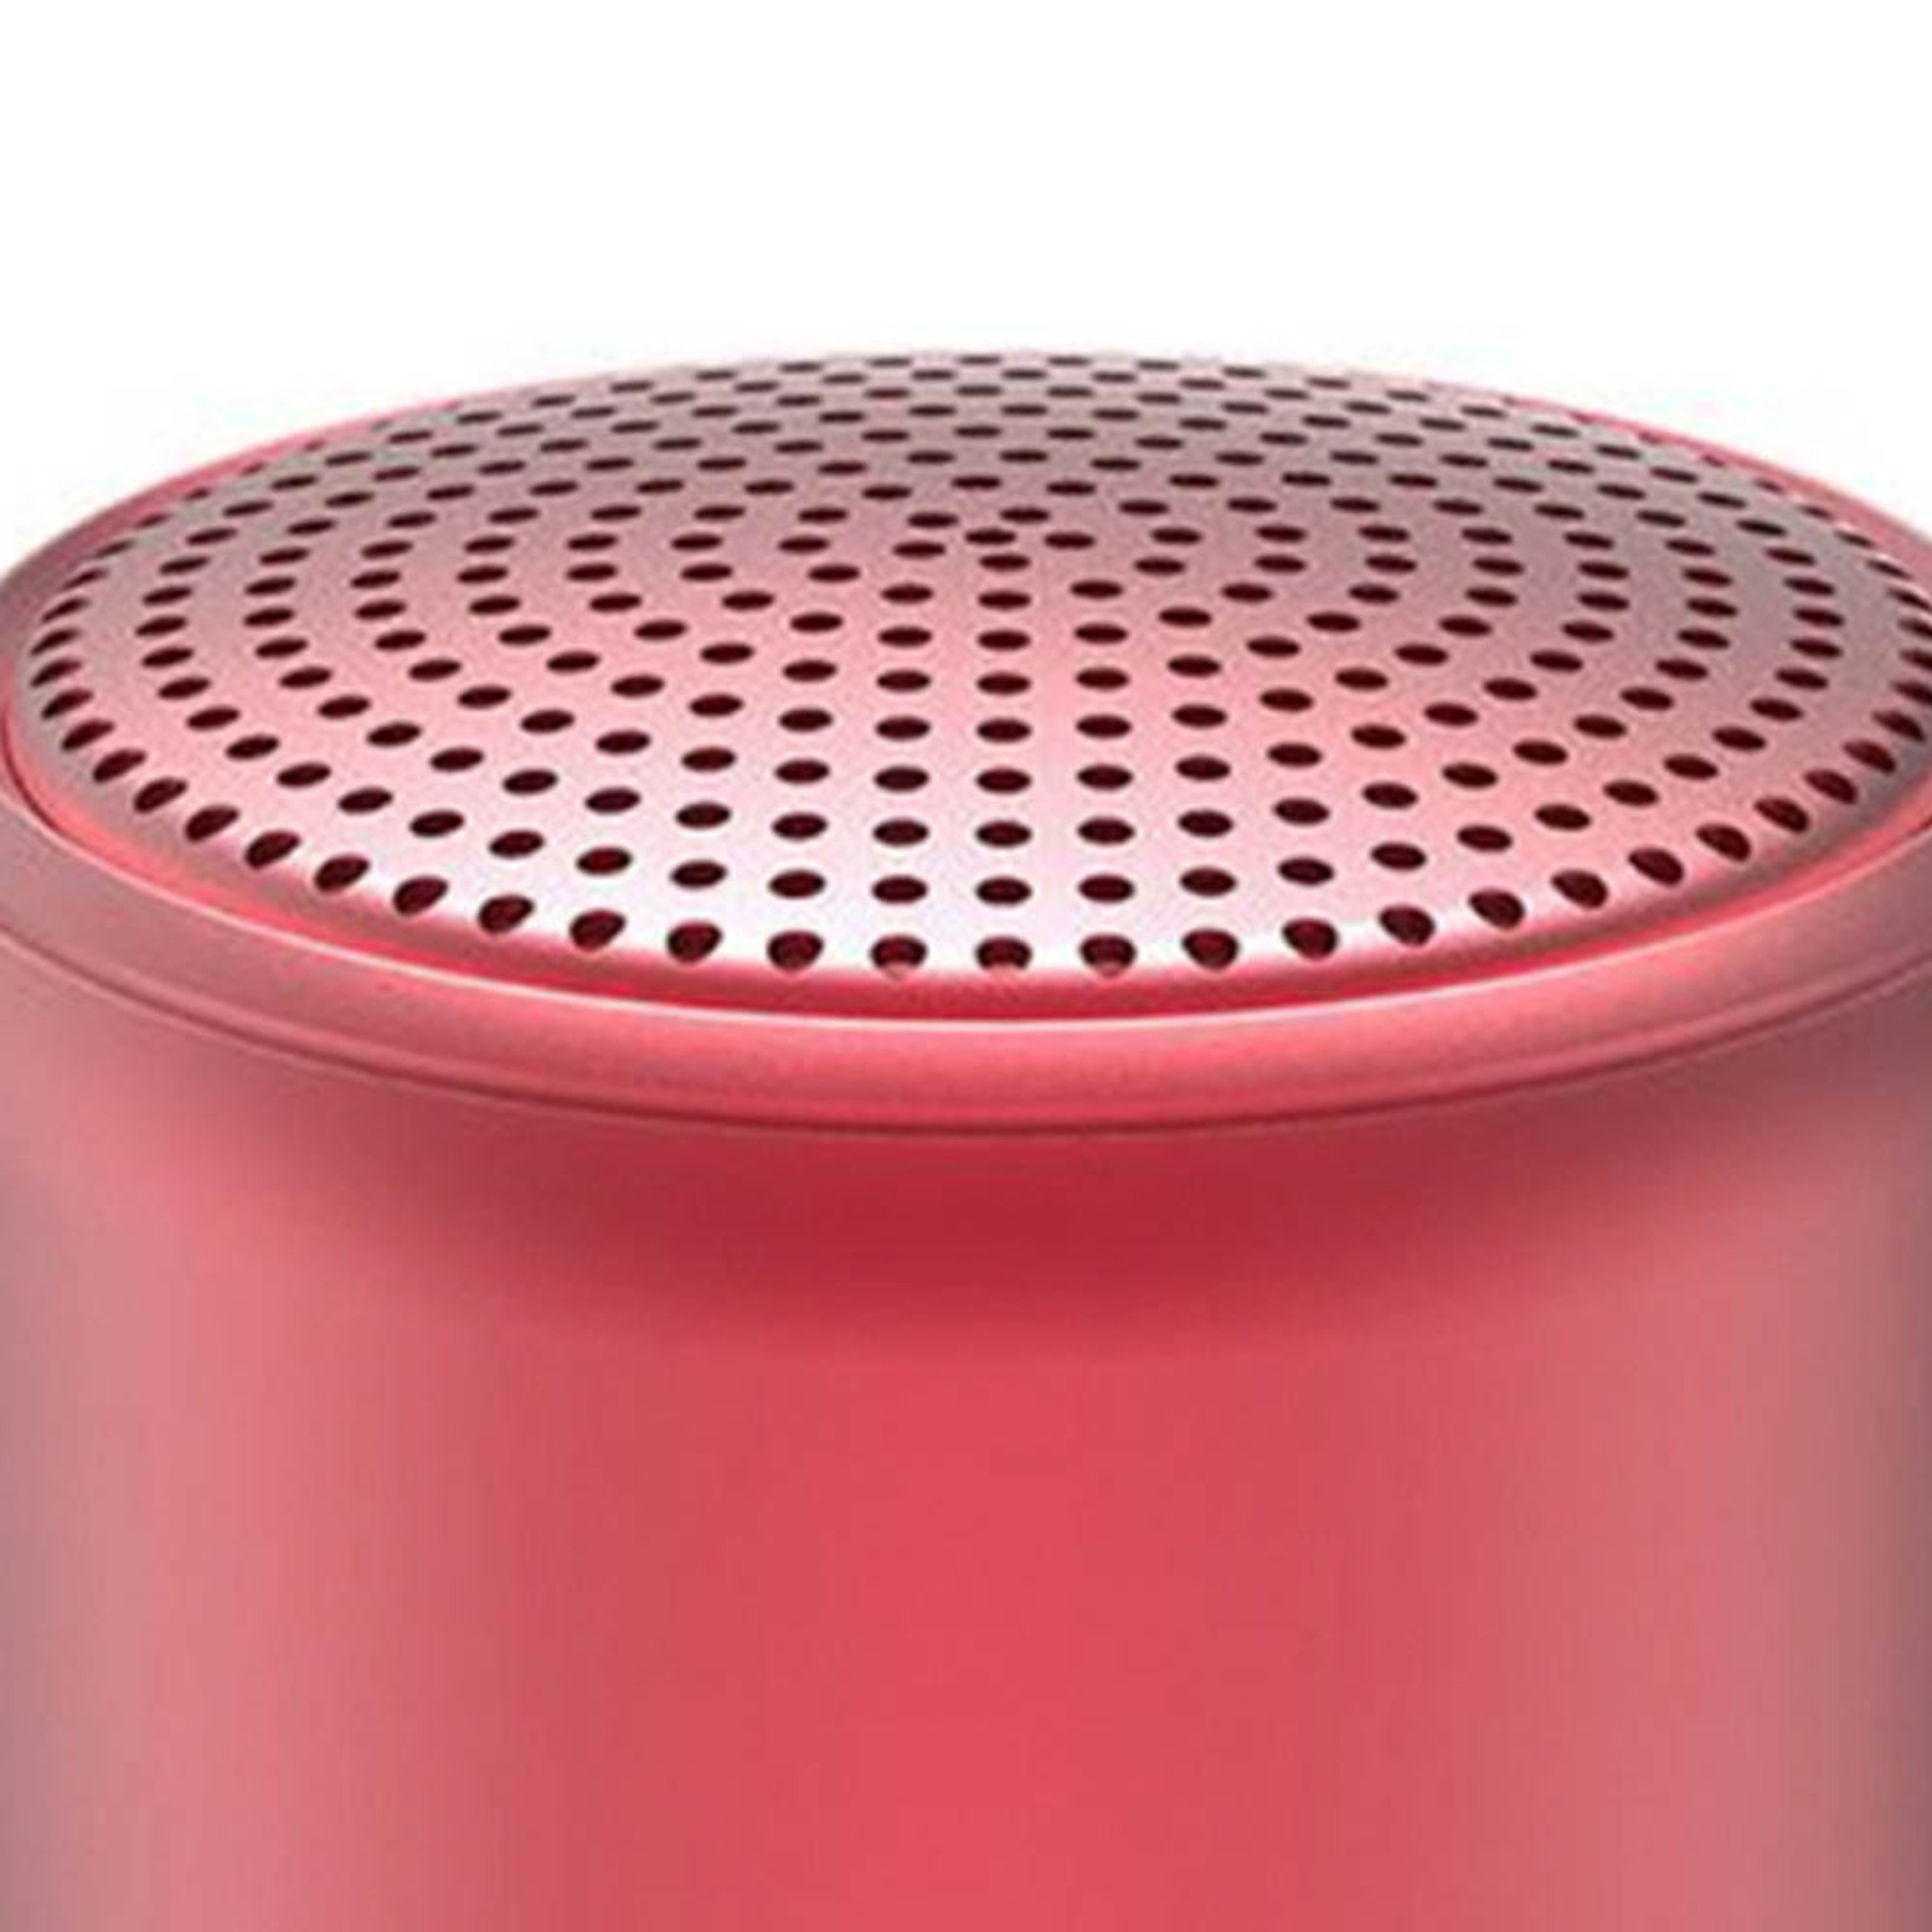 Altavoz Bluetooth Inalambrico - Rojo - compatible con Apple Xiaomi Huawei  MKP